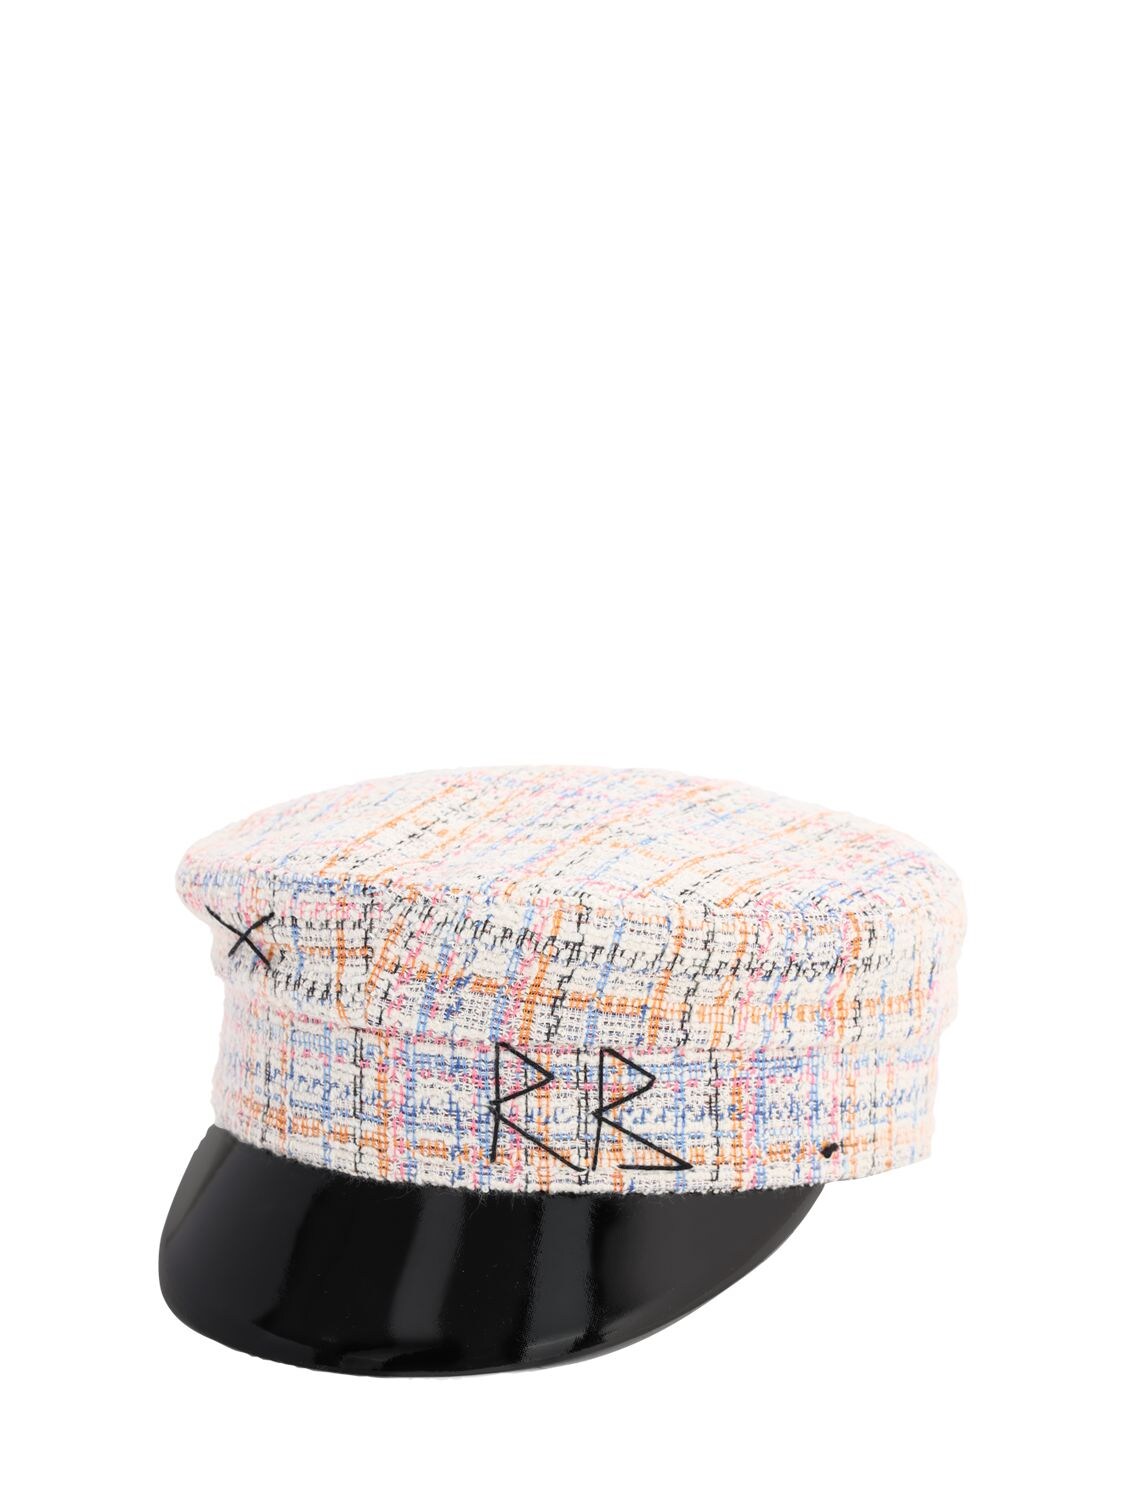 RUSLAN BAGINSKIY TWEED BAKER BOY HAT,71I99I033-TVVMVEK1